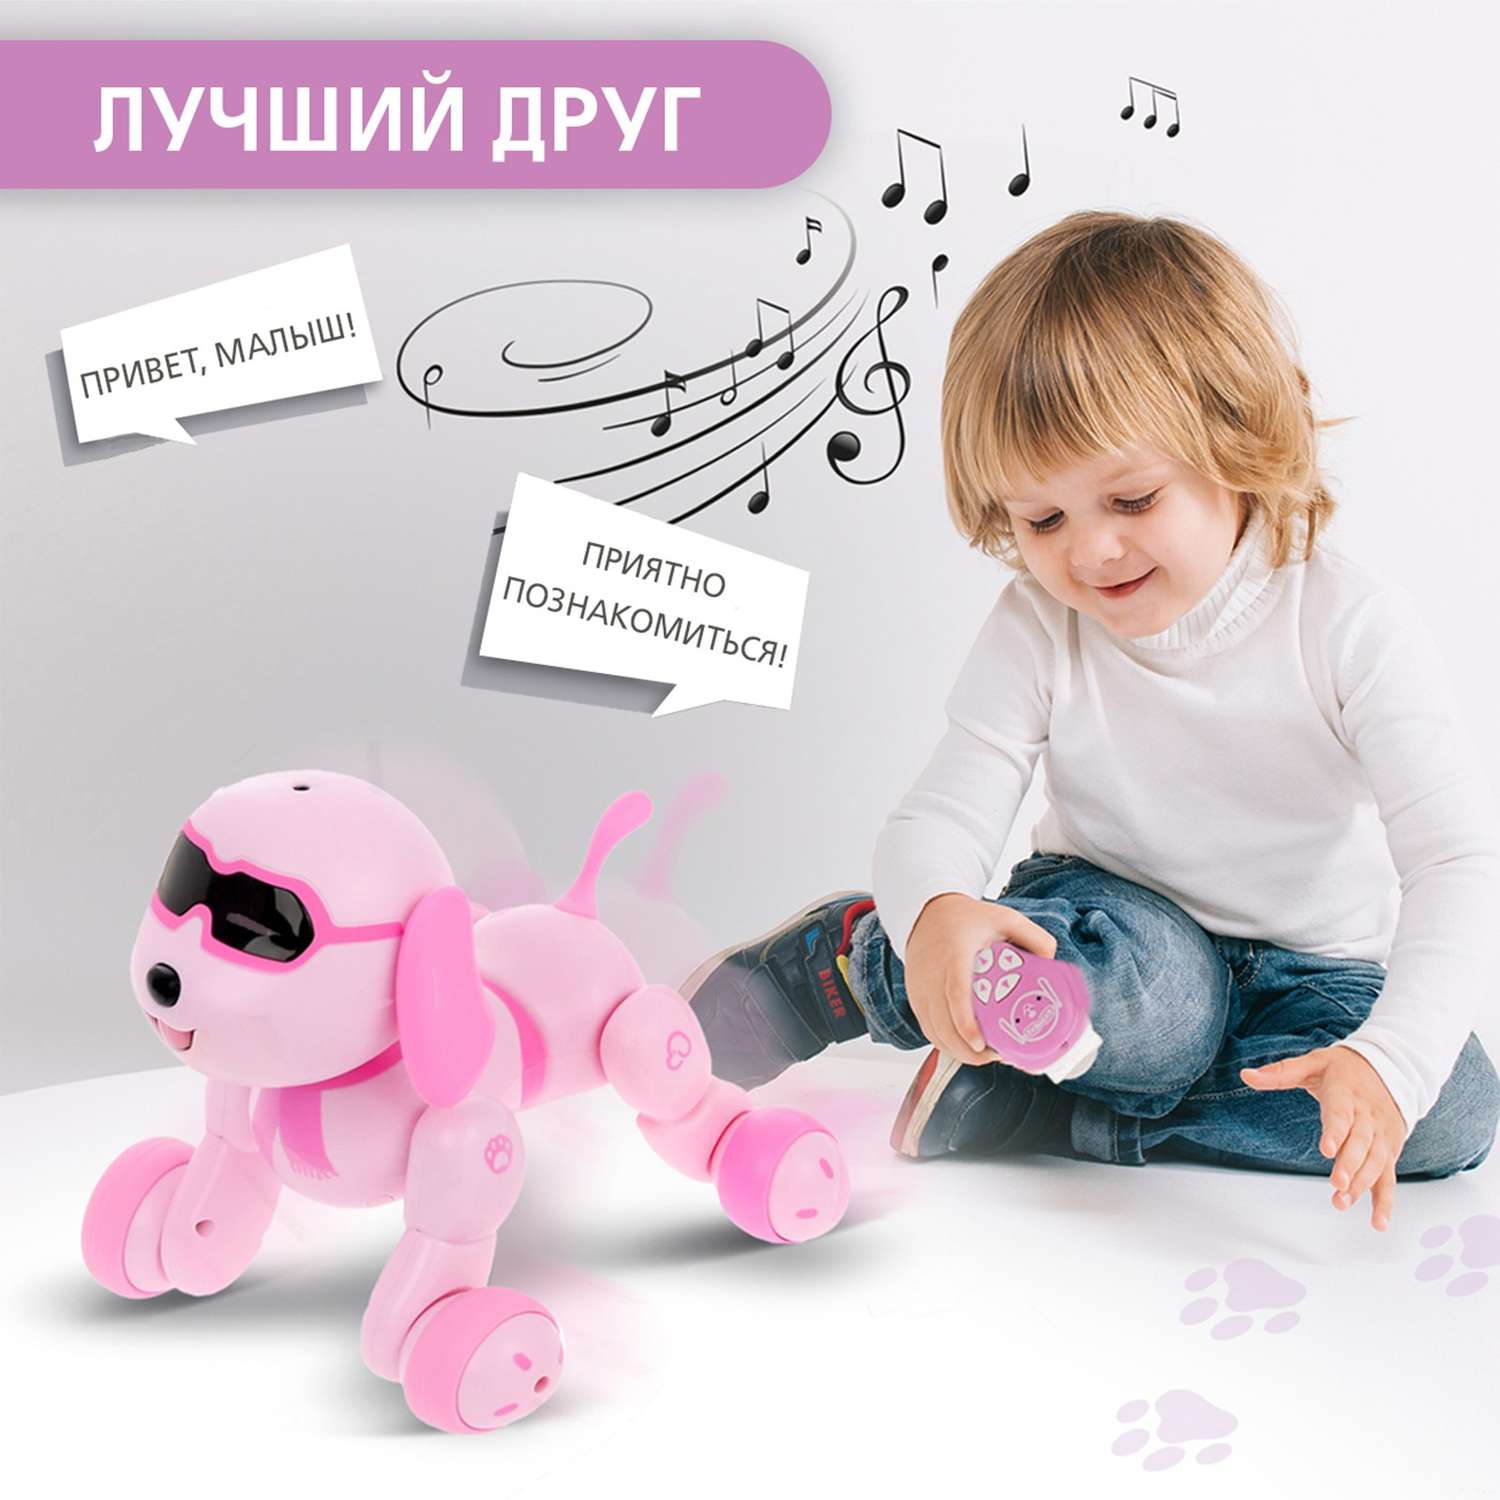 Робот игрушка Автоград радиоуправляемый Собака Charlie световые и звуковые эффекты русская озвучка - фото 6